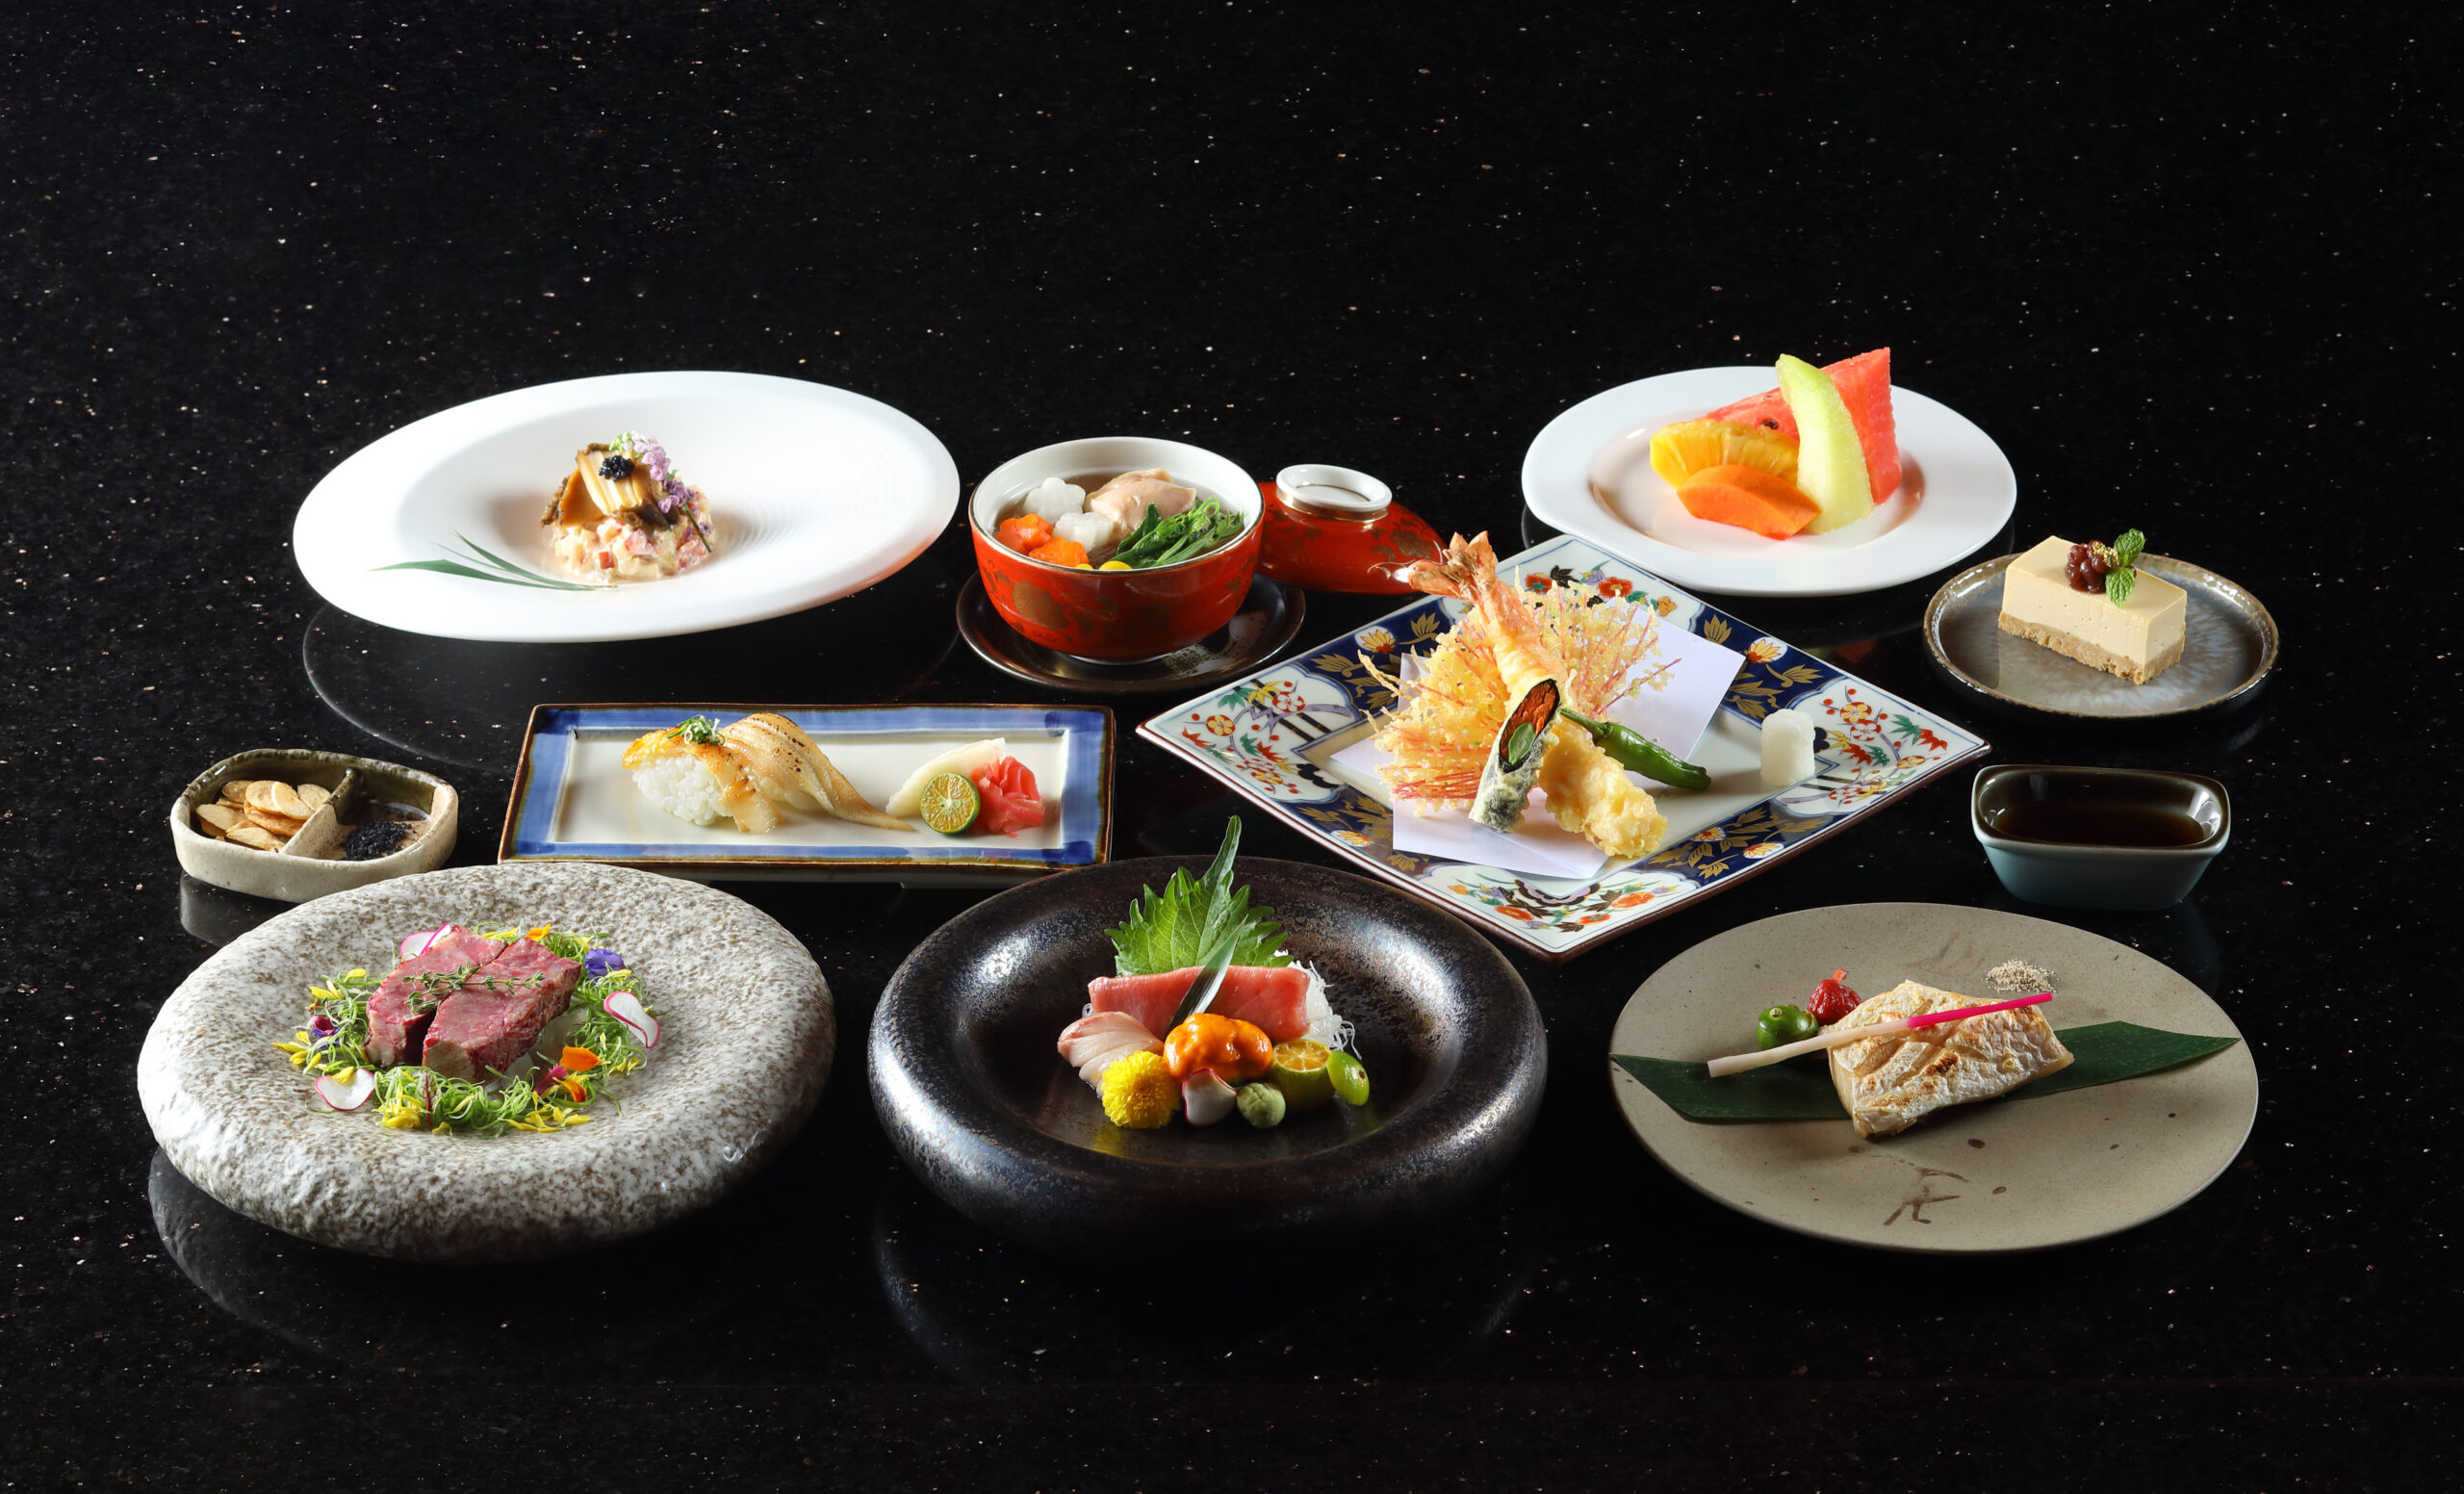 「夏之饗宴-艷夏蠔情」季節限定日式頂級套餐，定價在2000元以上，只到八月底